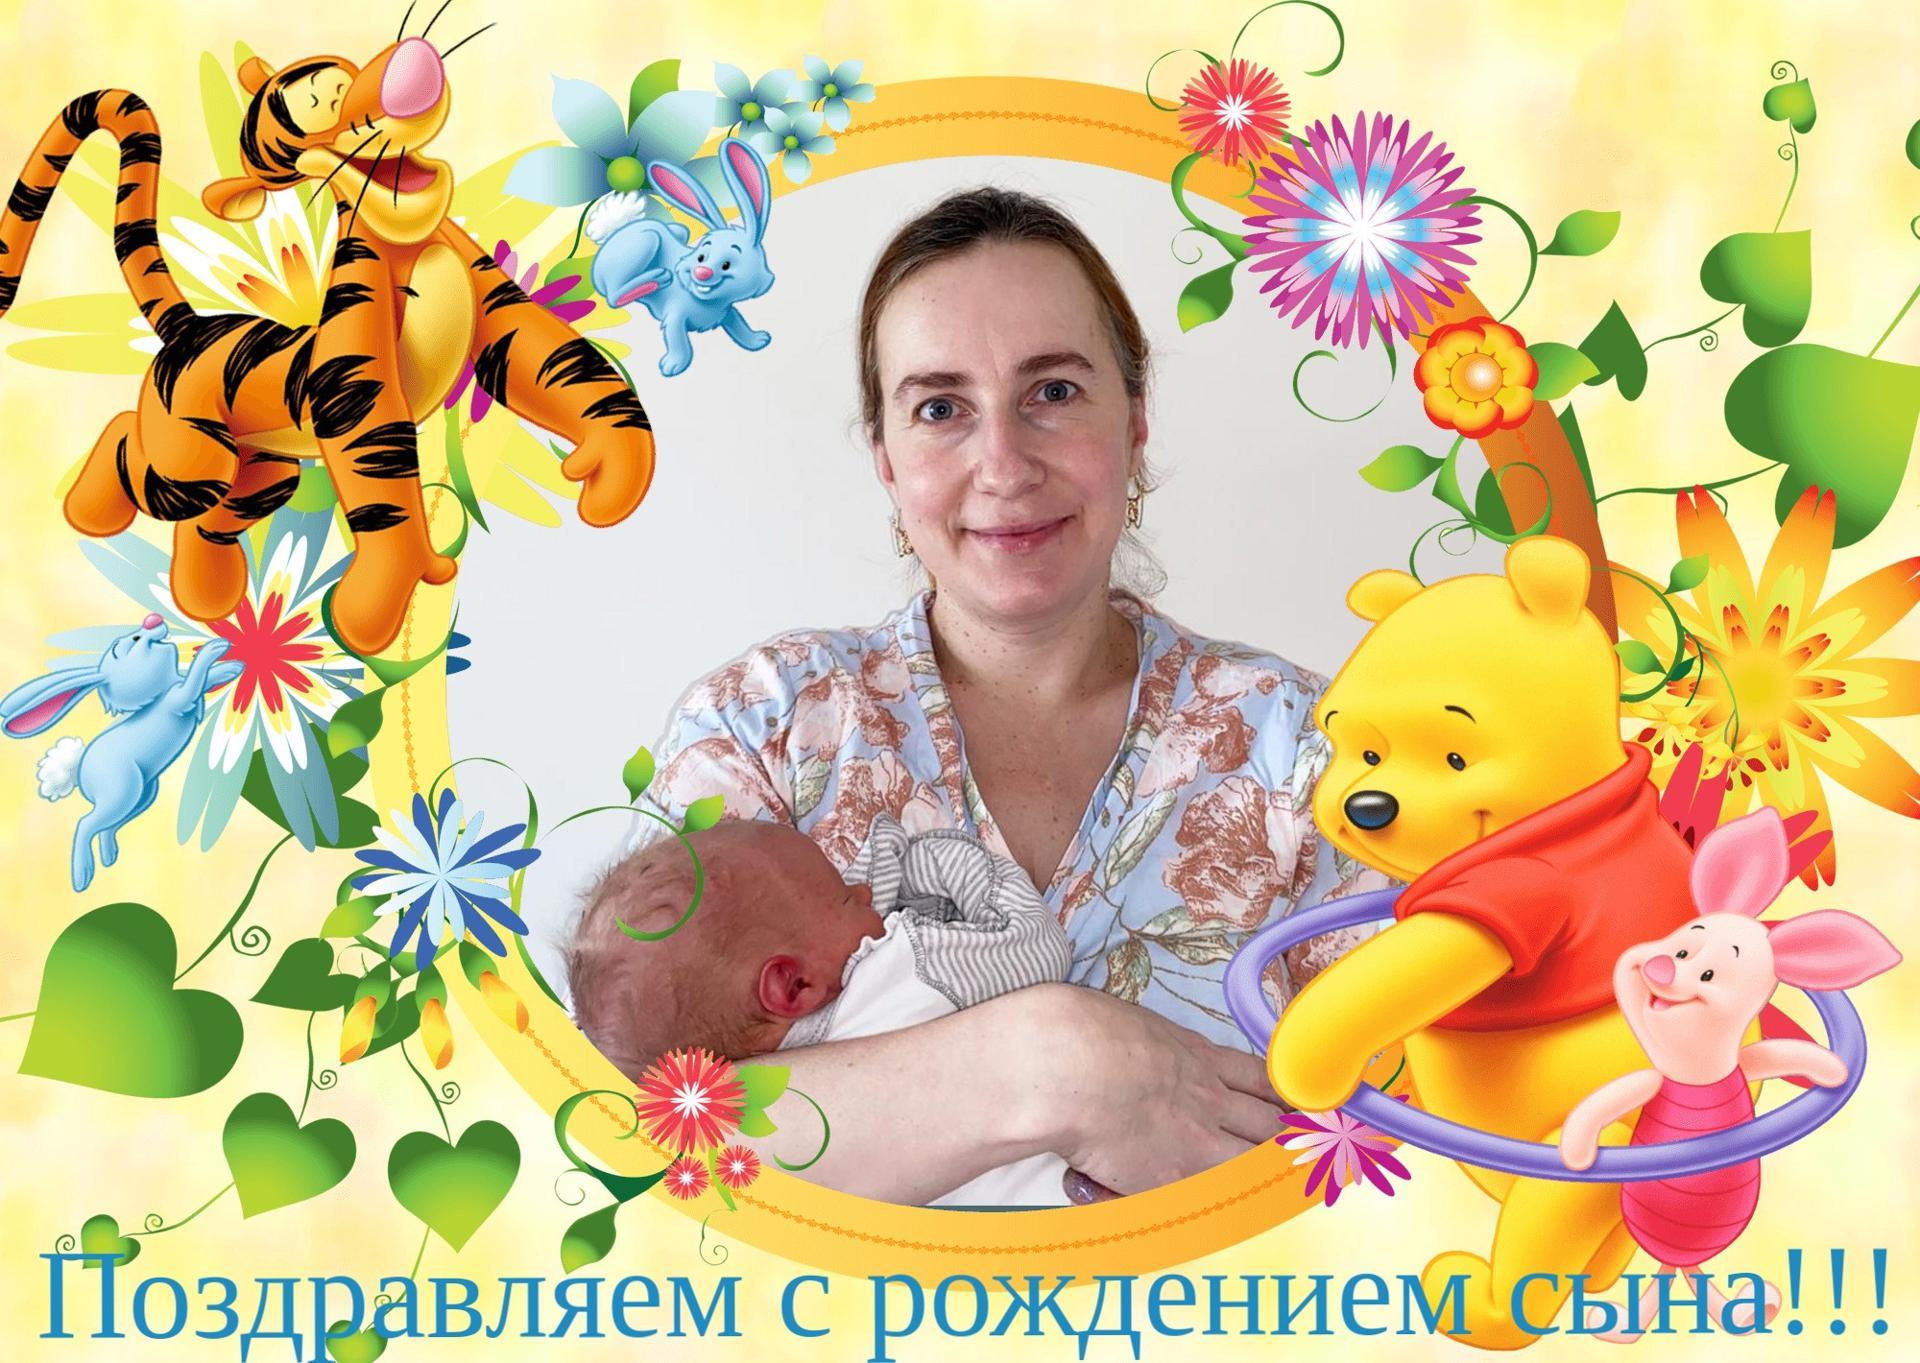 Артем- четвертый ребенок в семье зарегистрирован в Сергиево-Посадском управлении ЗАГС